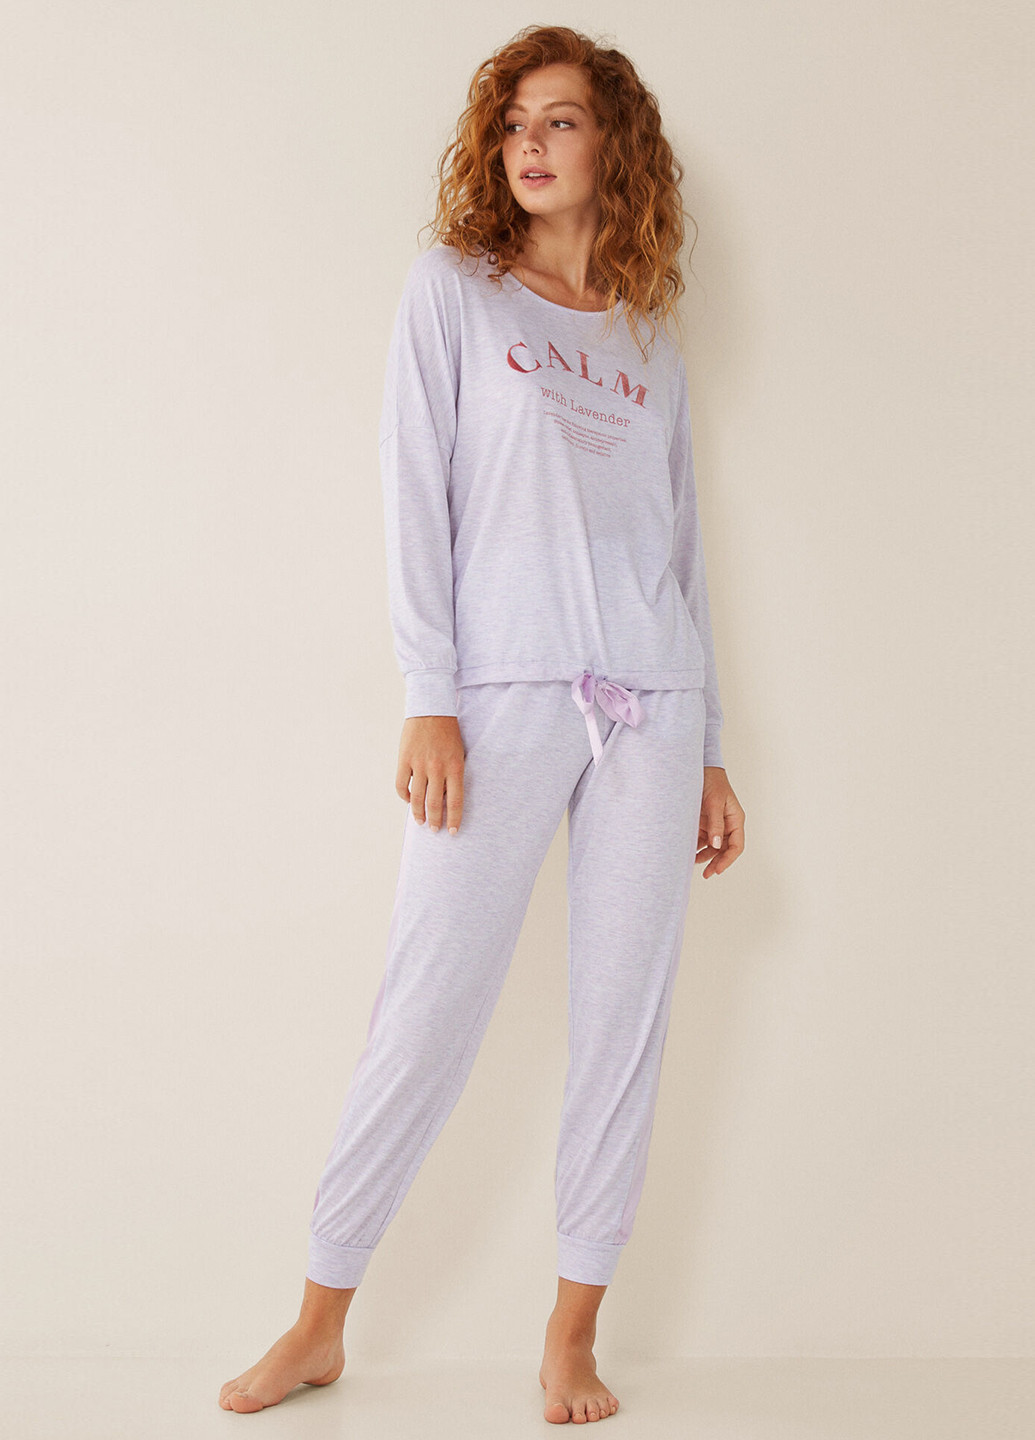 Сиреневая всесезон пижама (лонгслив, брюки) лонгслив + брюки Women'secret